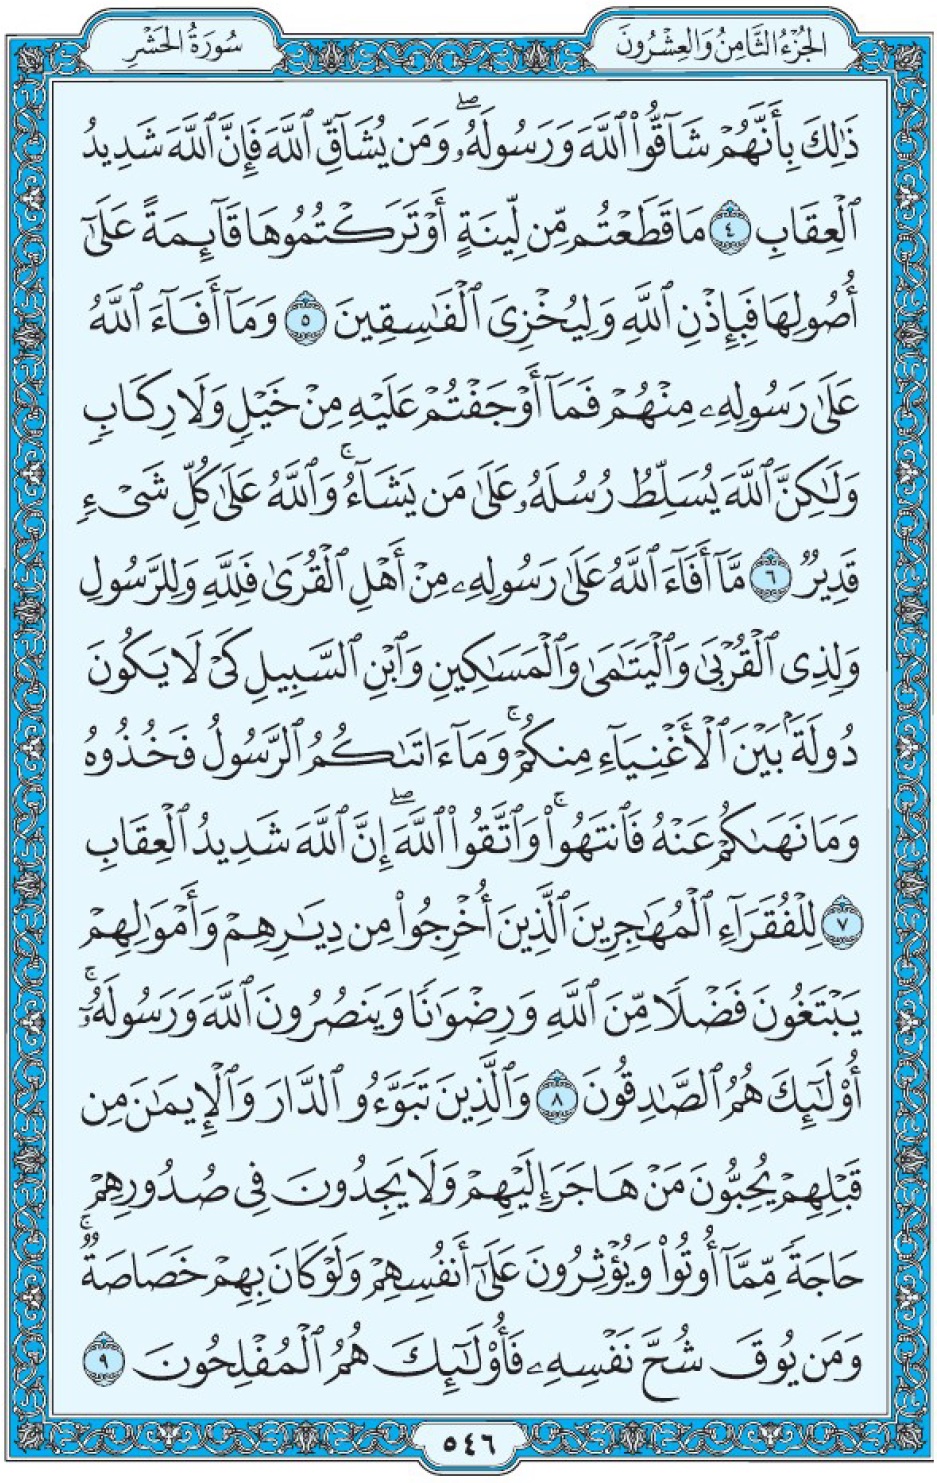 Коран Мединский мусхаф страница 546, сура аль-Хашр, аят 4-9